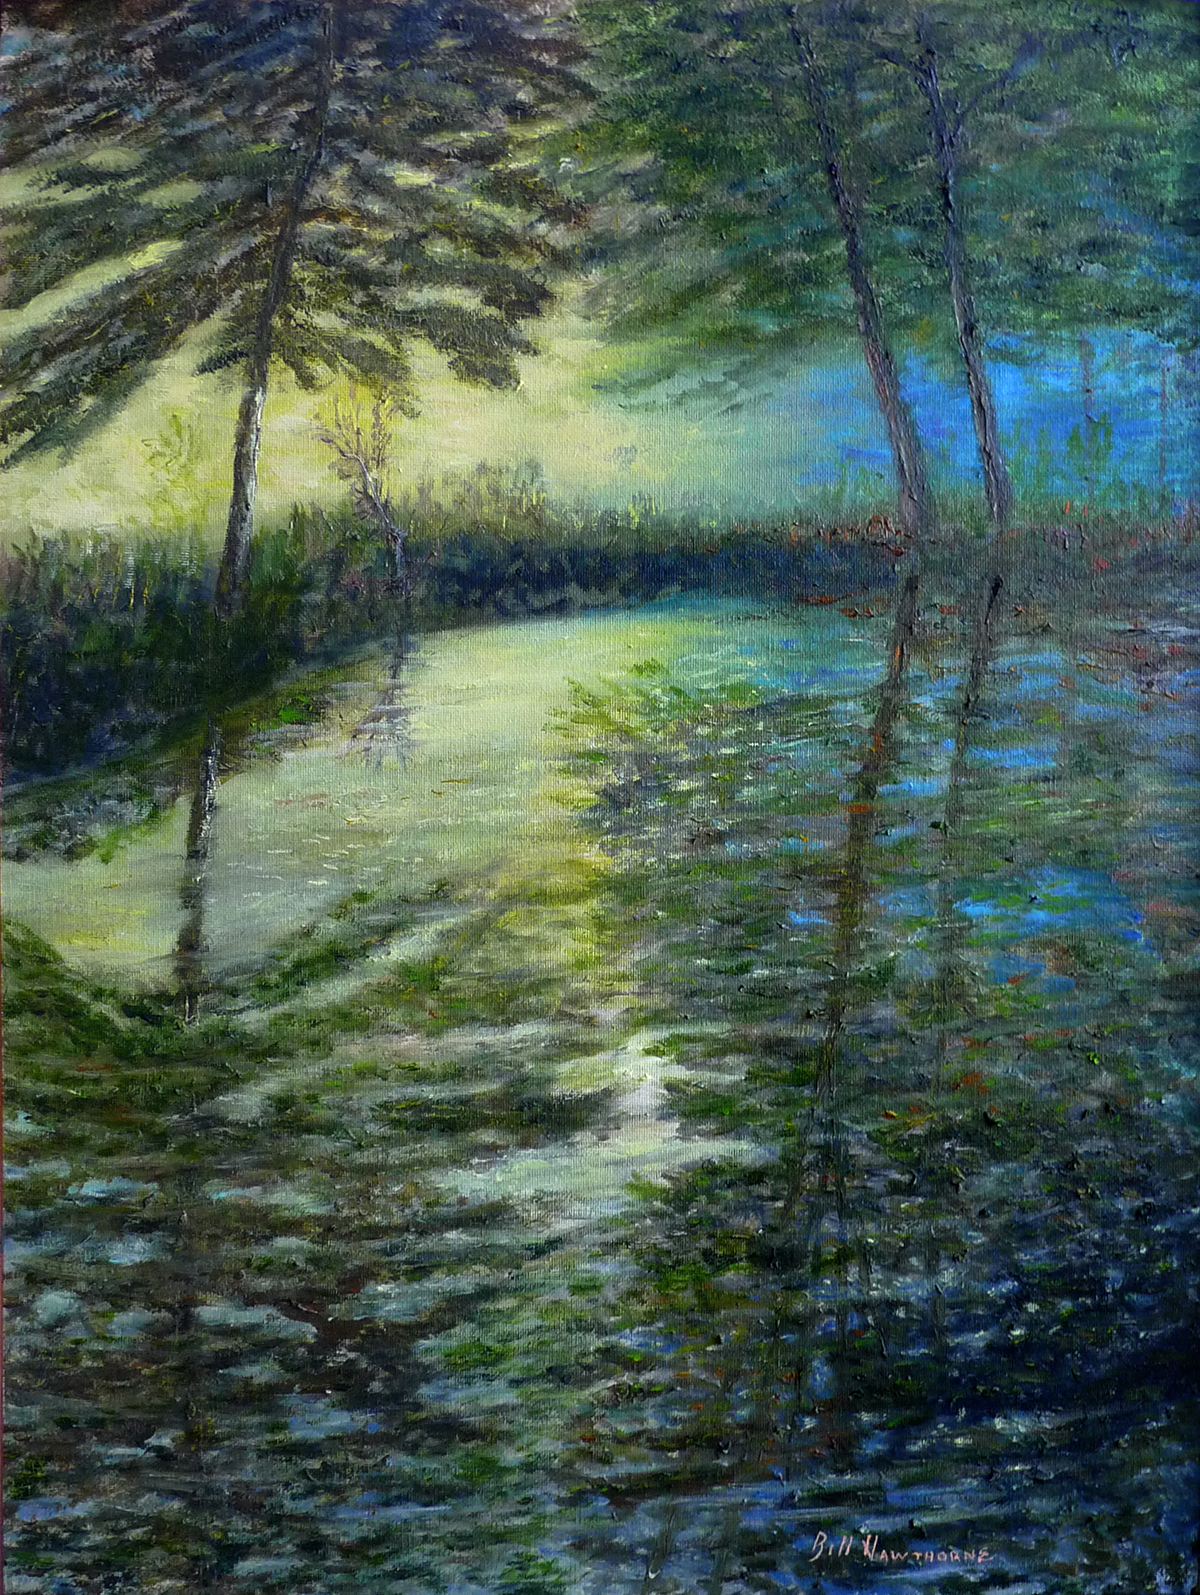 Monet’s River